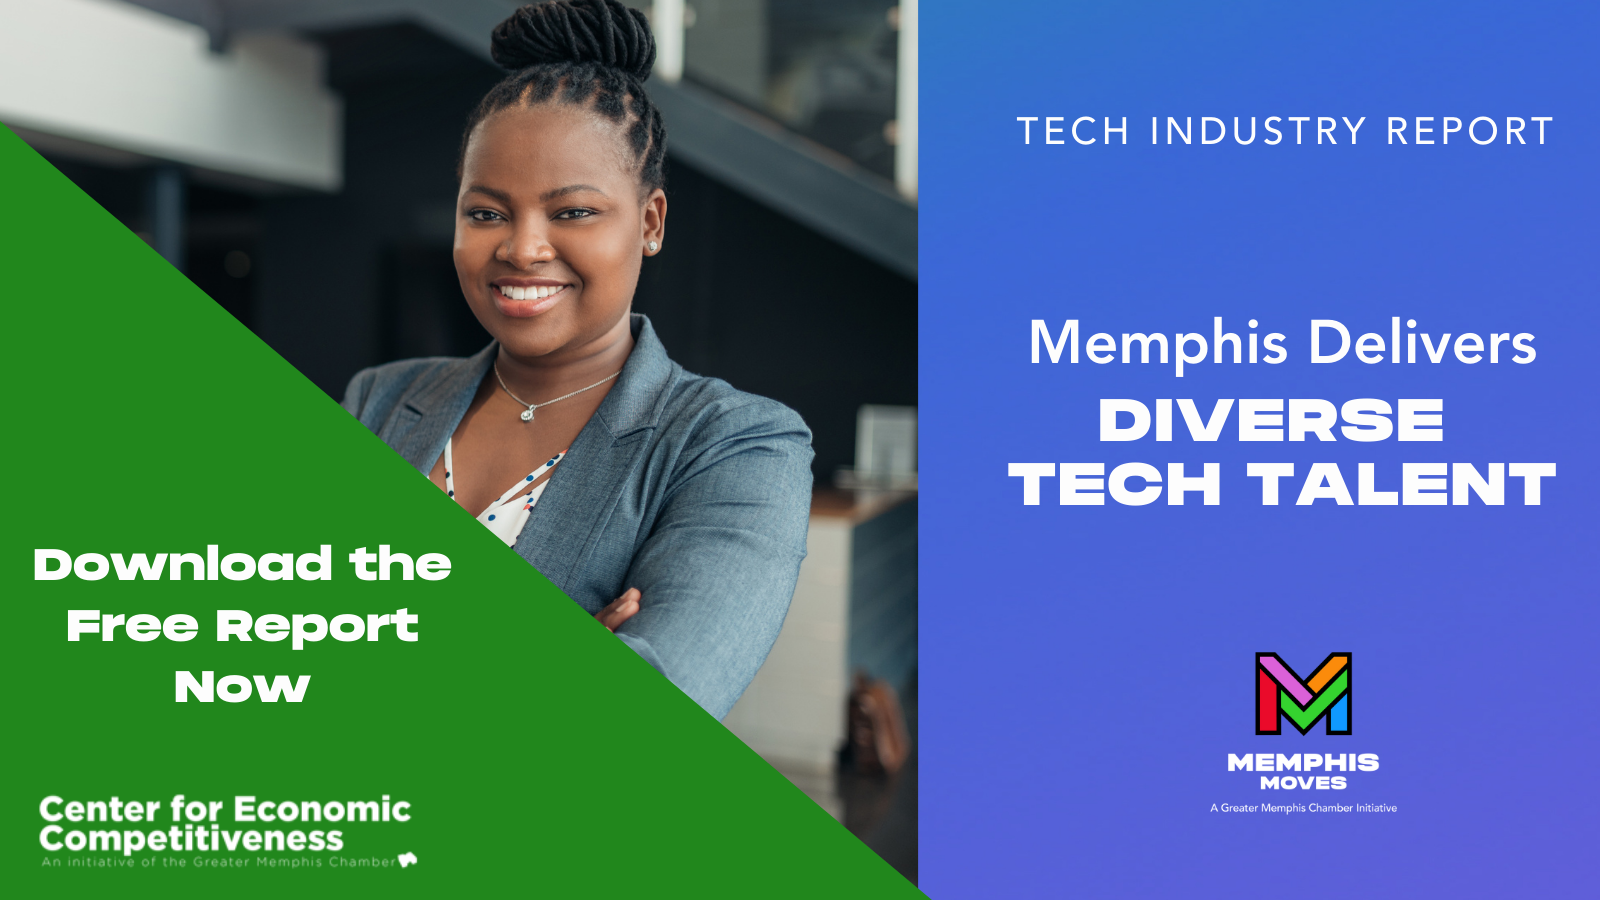 Memphis Delivers Diverse Tech Talent